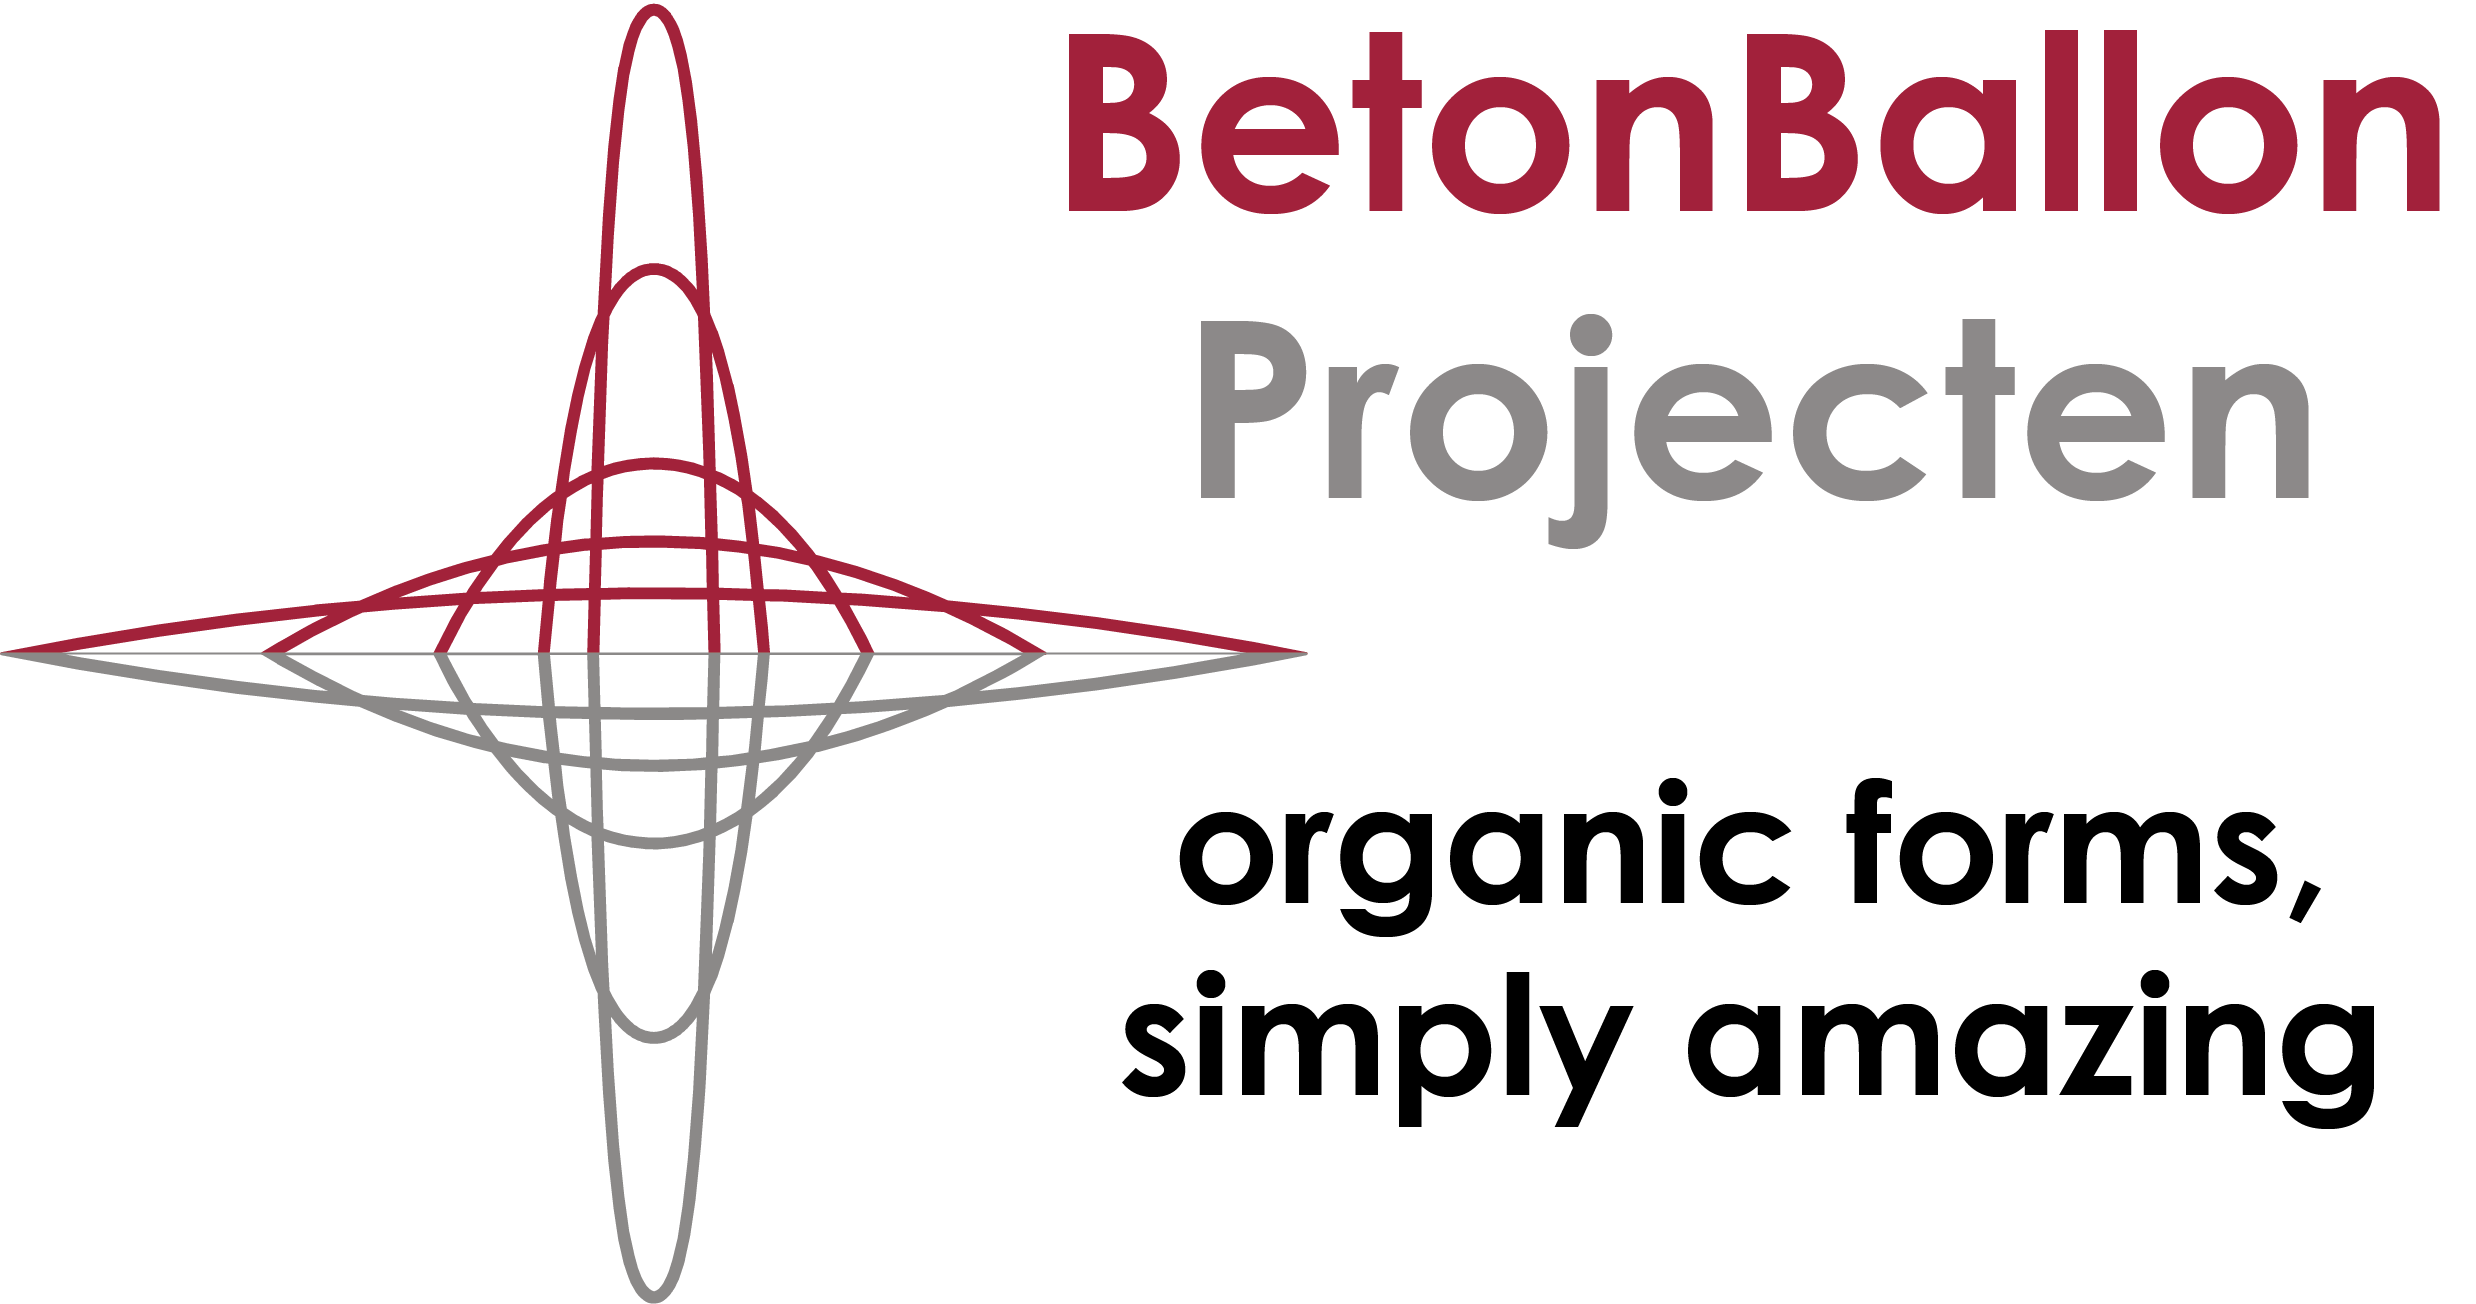 BetonBallon Projecten